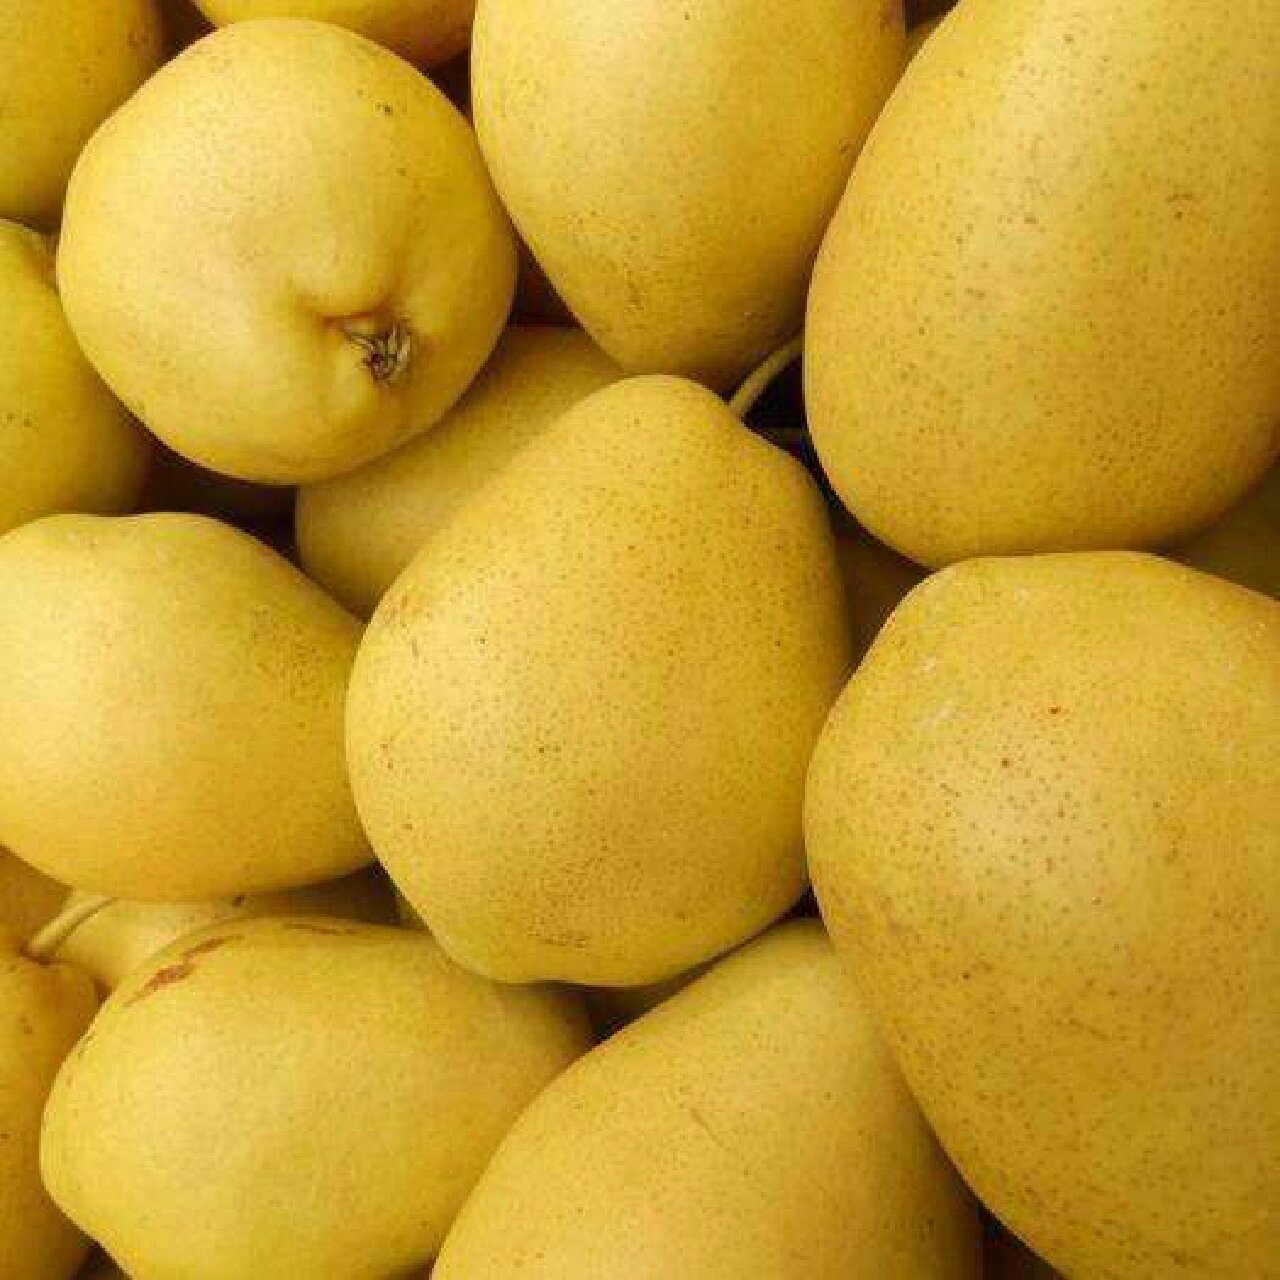 甘肃老家的水果 冬果梨俗称西园梨,产于兰州市郊区及皋兰,靖远和